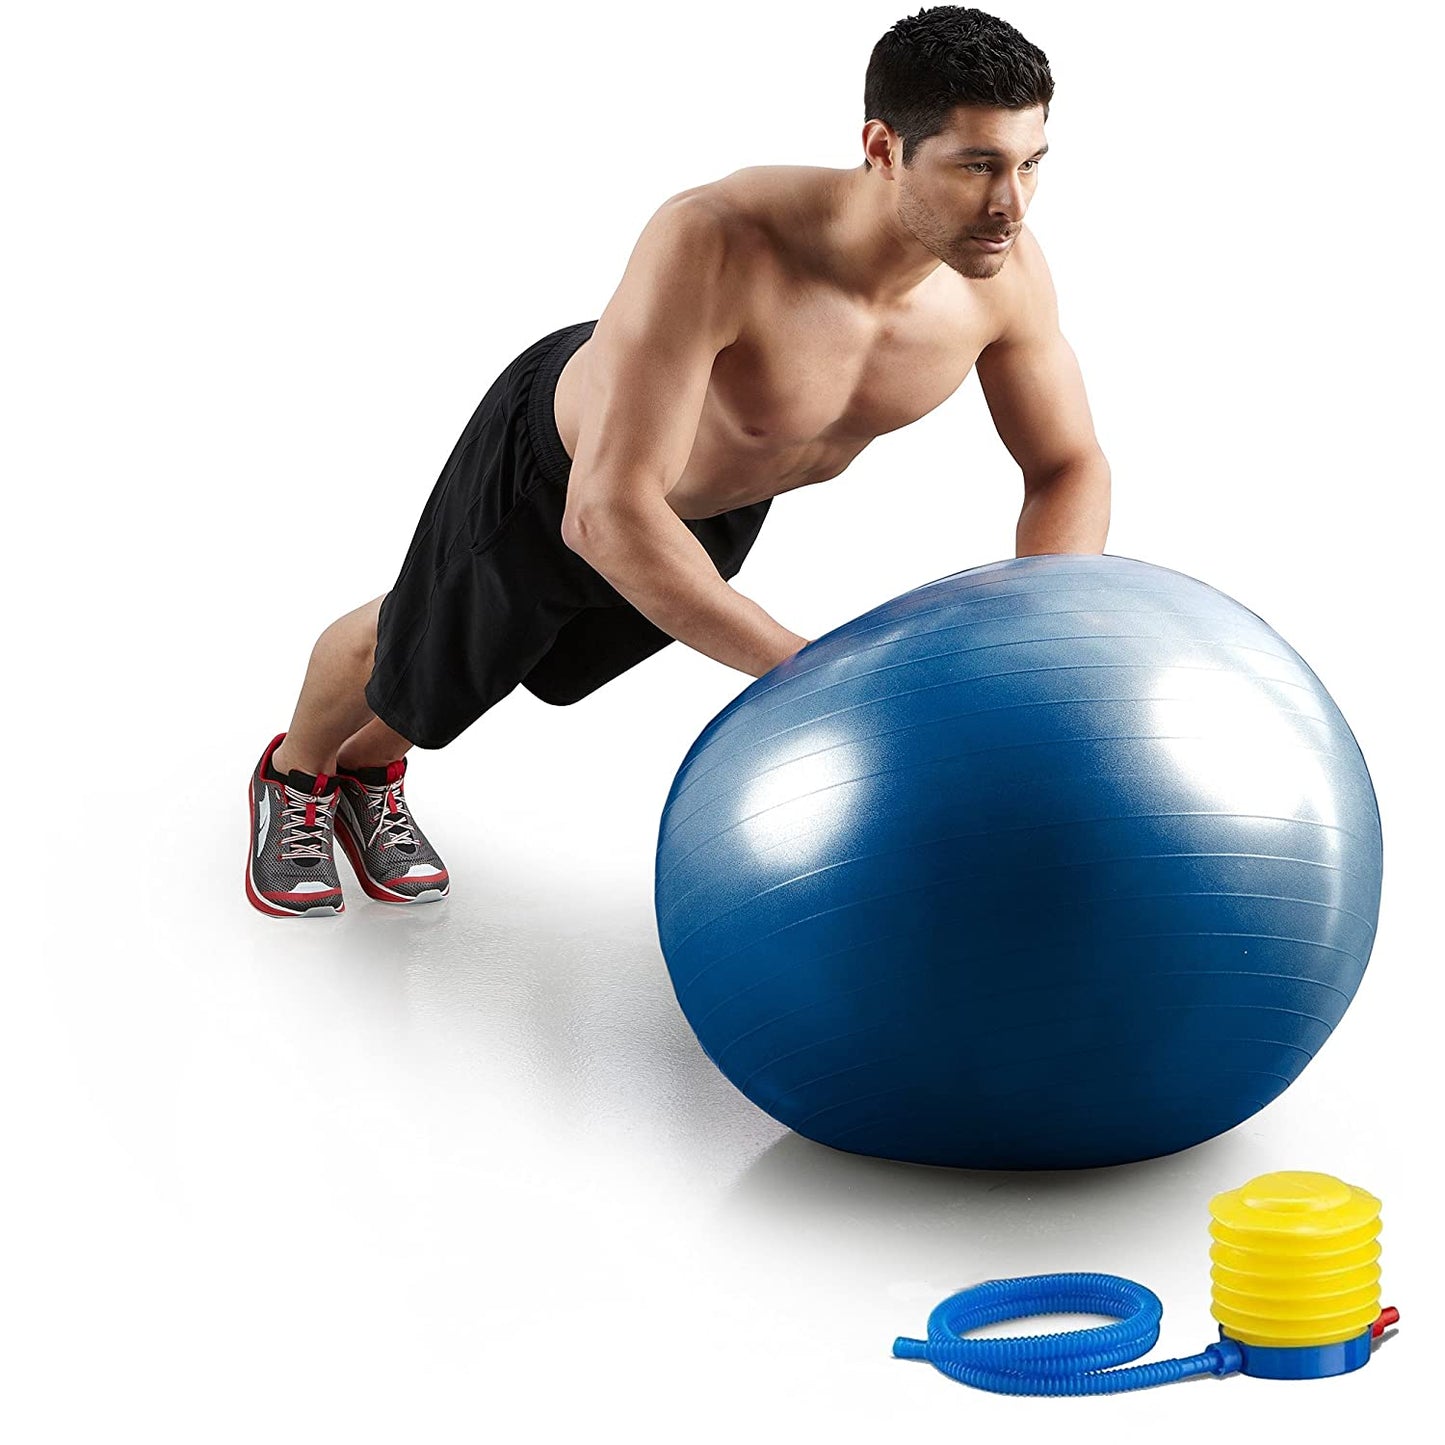 PVC Gym Ball With Air Pump, Size 65cm, (Blue)